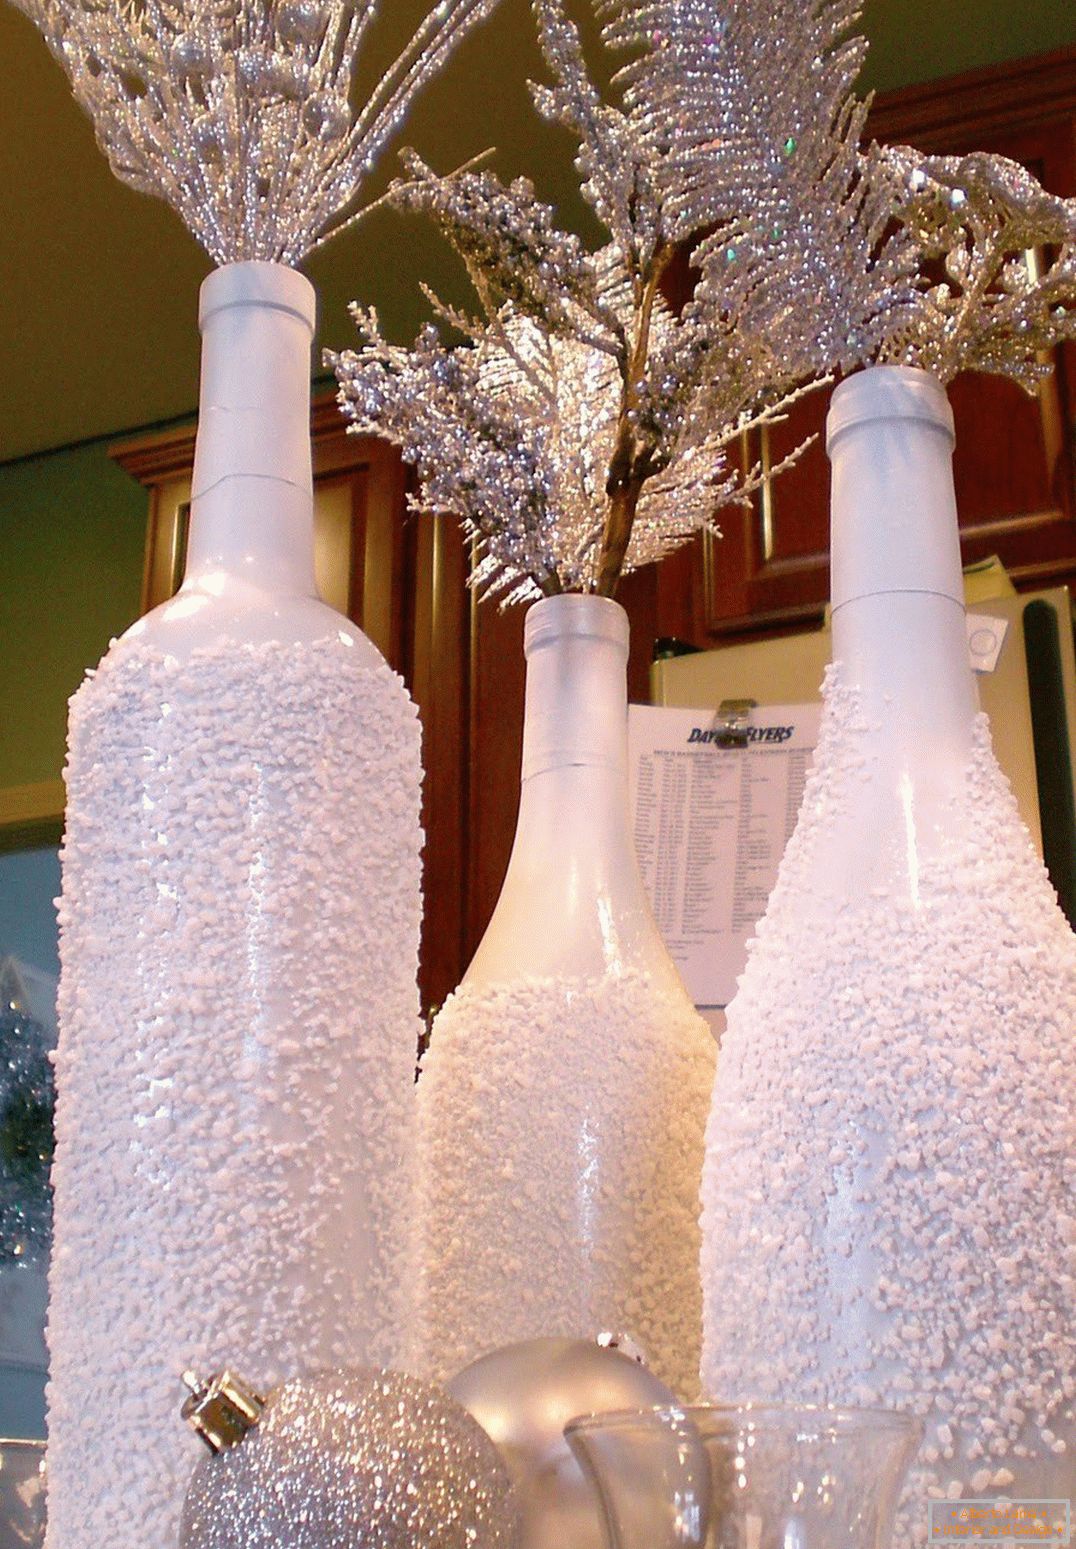 Božična dekoracija steklenic